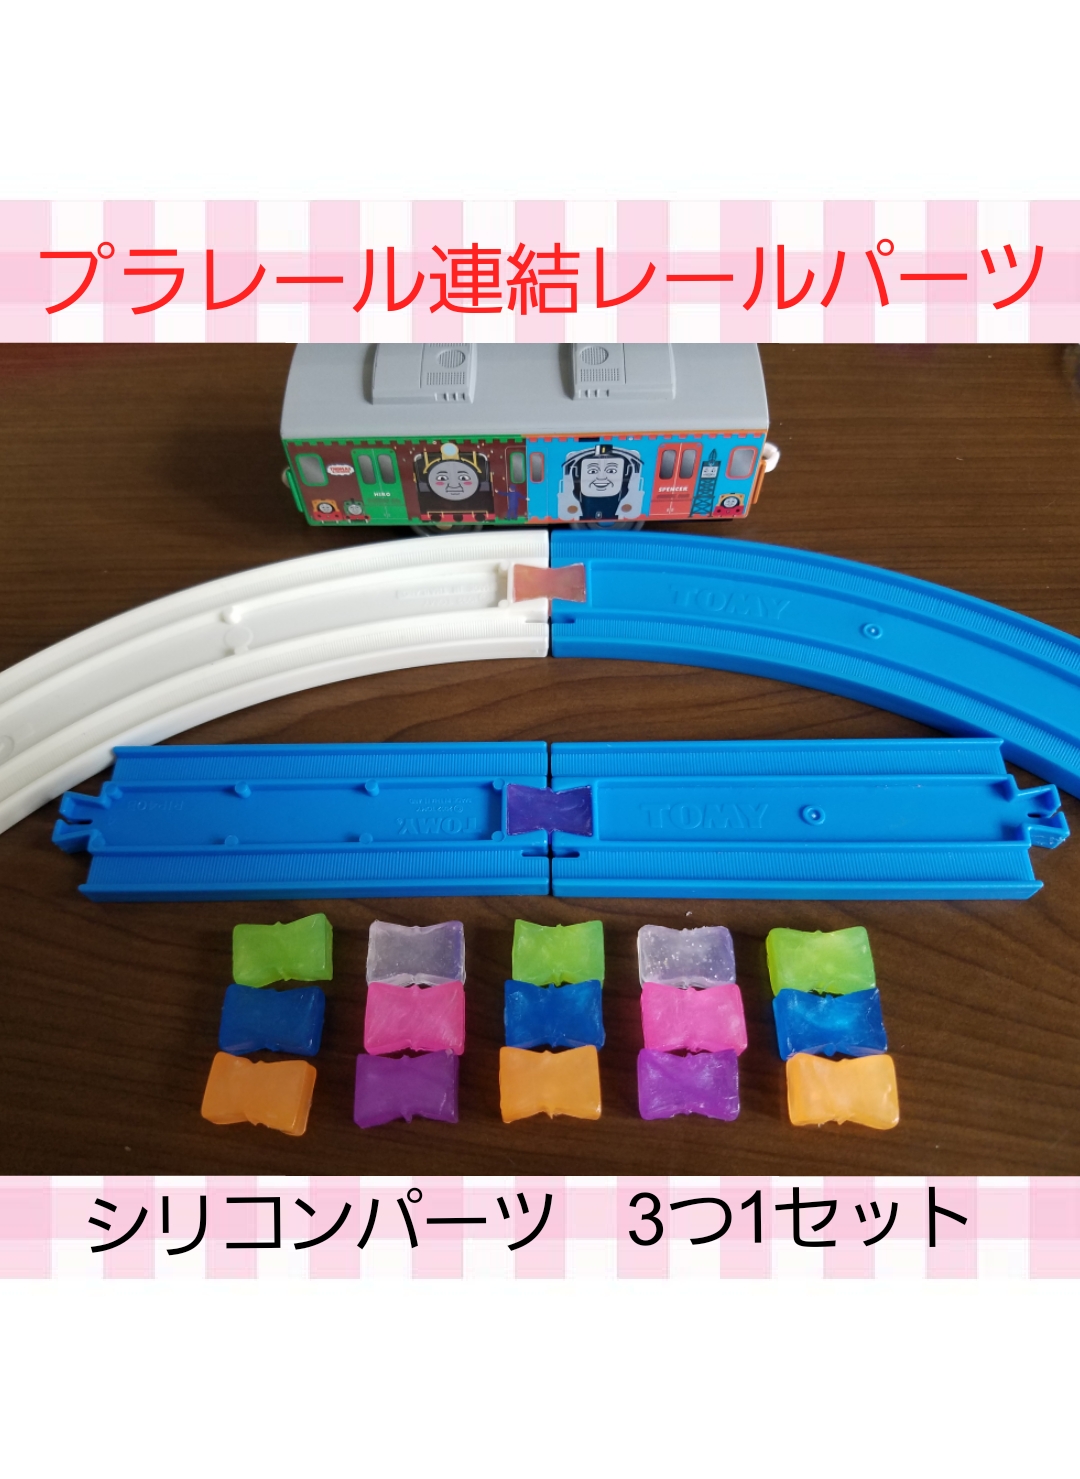 アイデア商品♡プラレールレール連結パーツ おもちゃ・人形 miyutiki